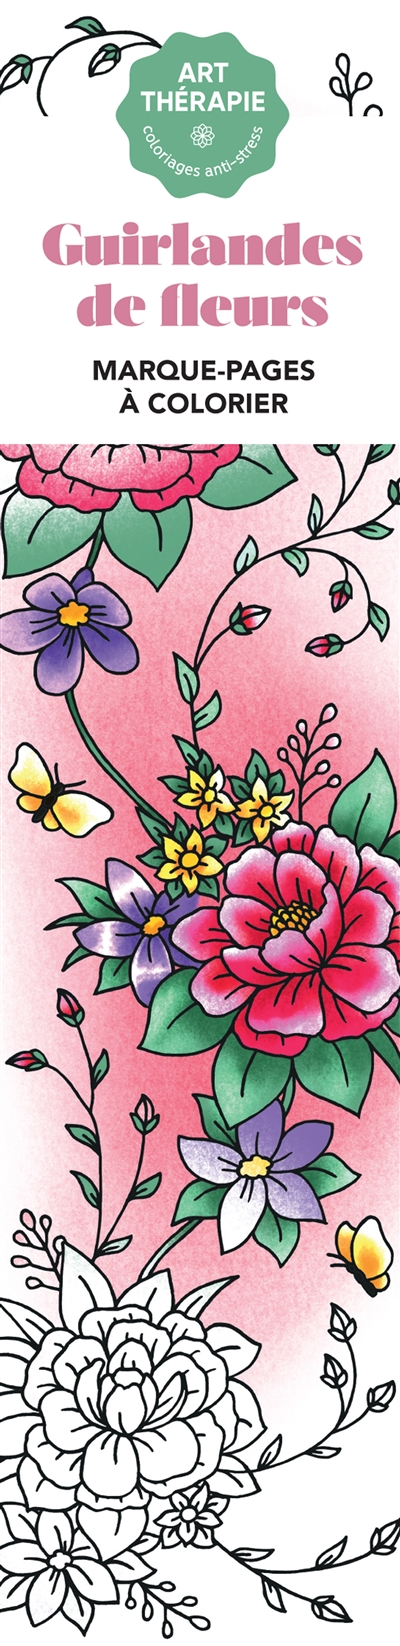 Guirlandes de fleurs : marque-pages à colorier